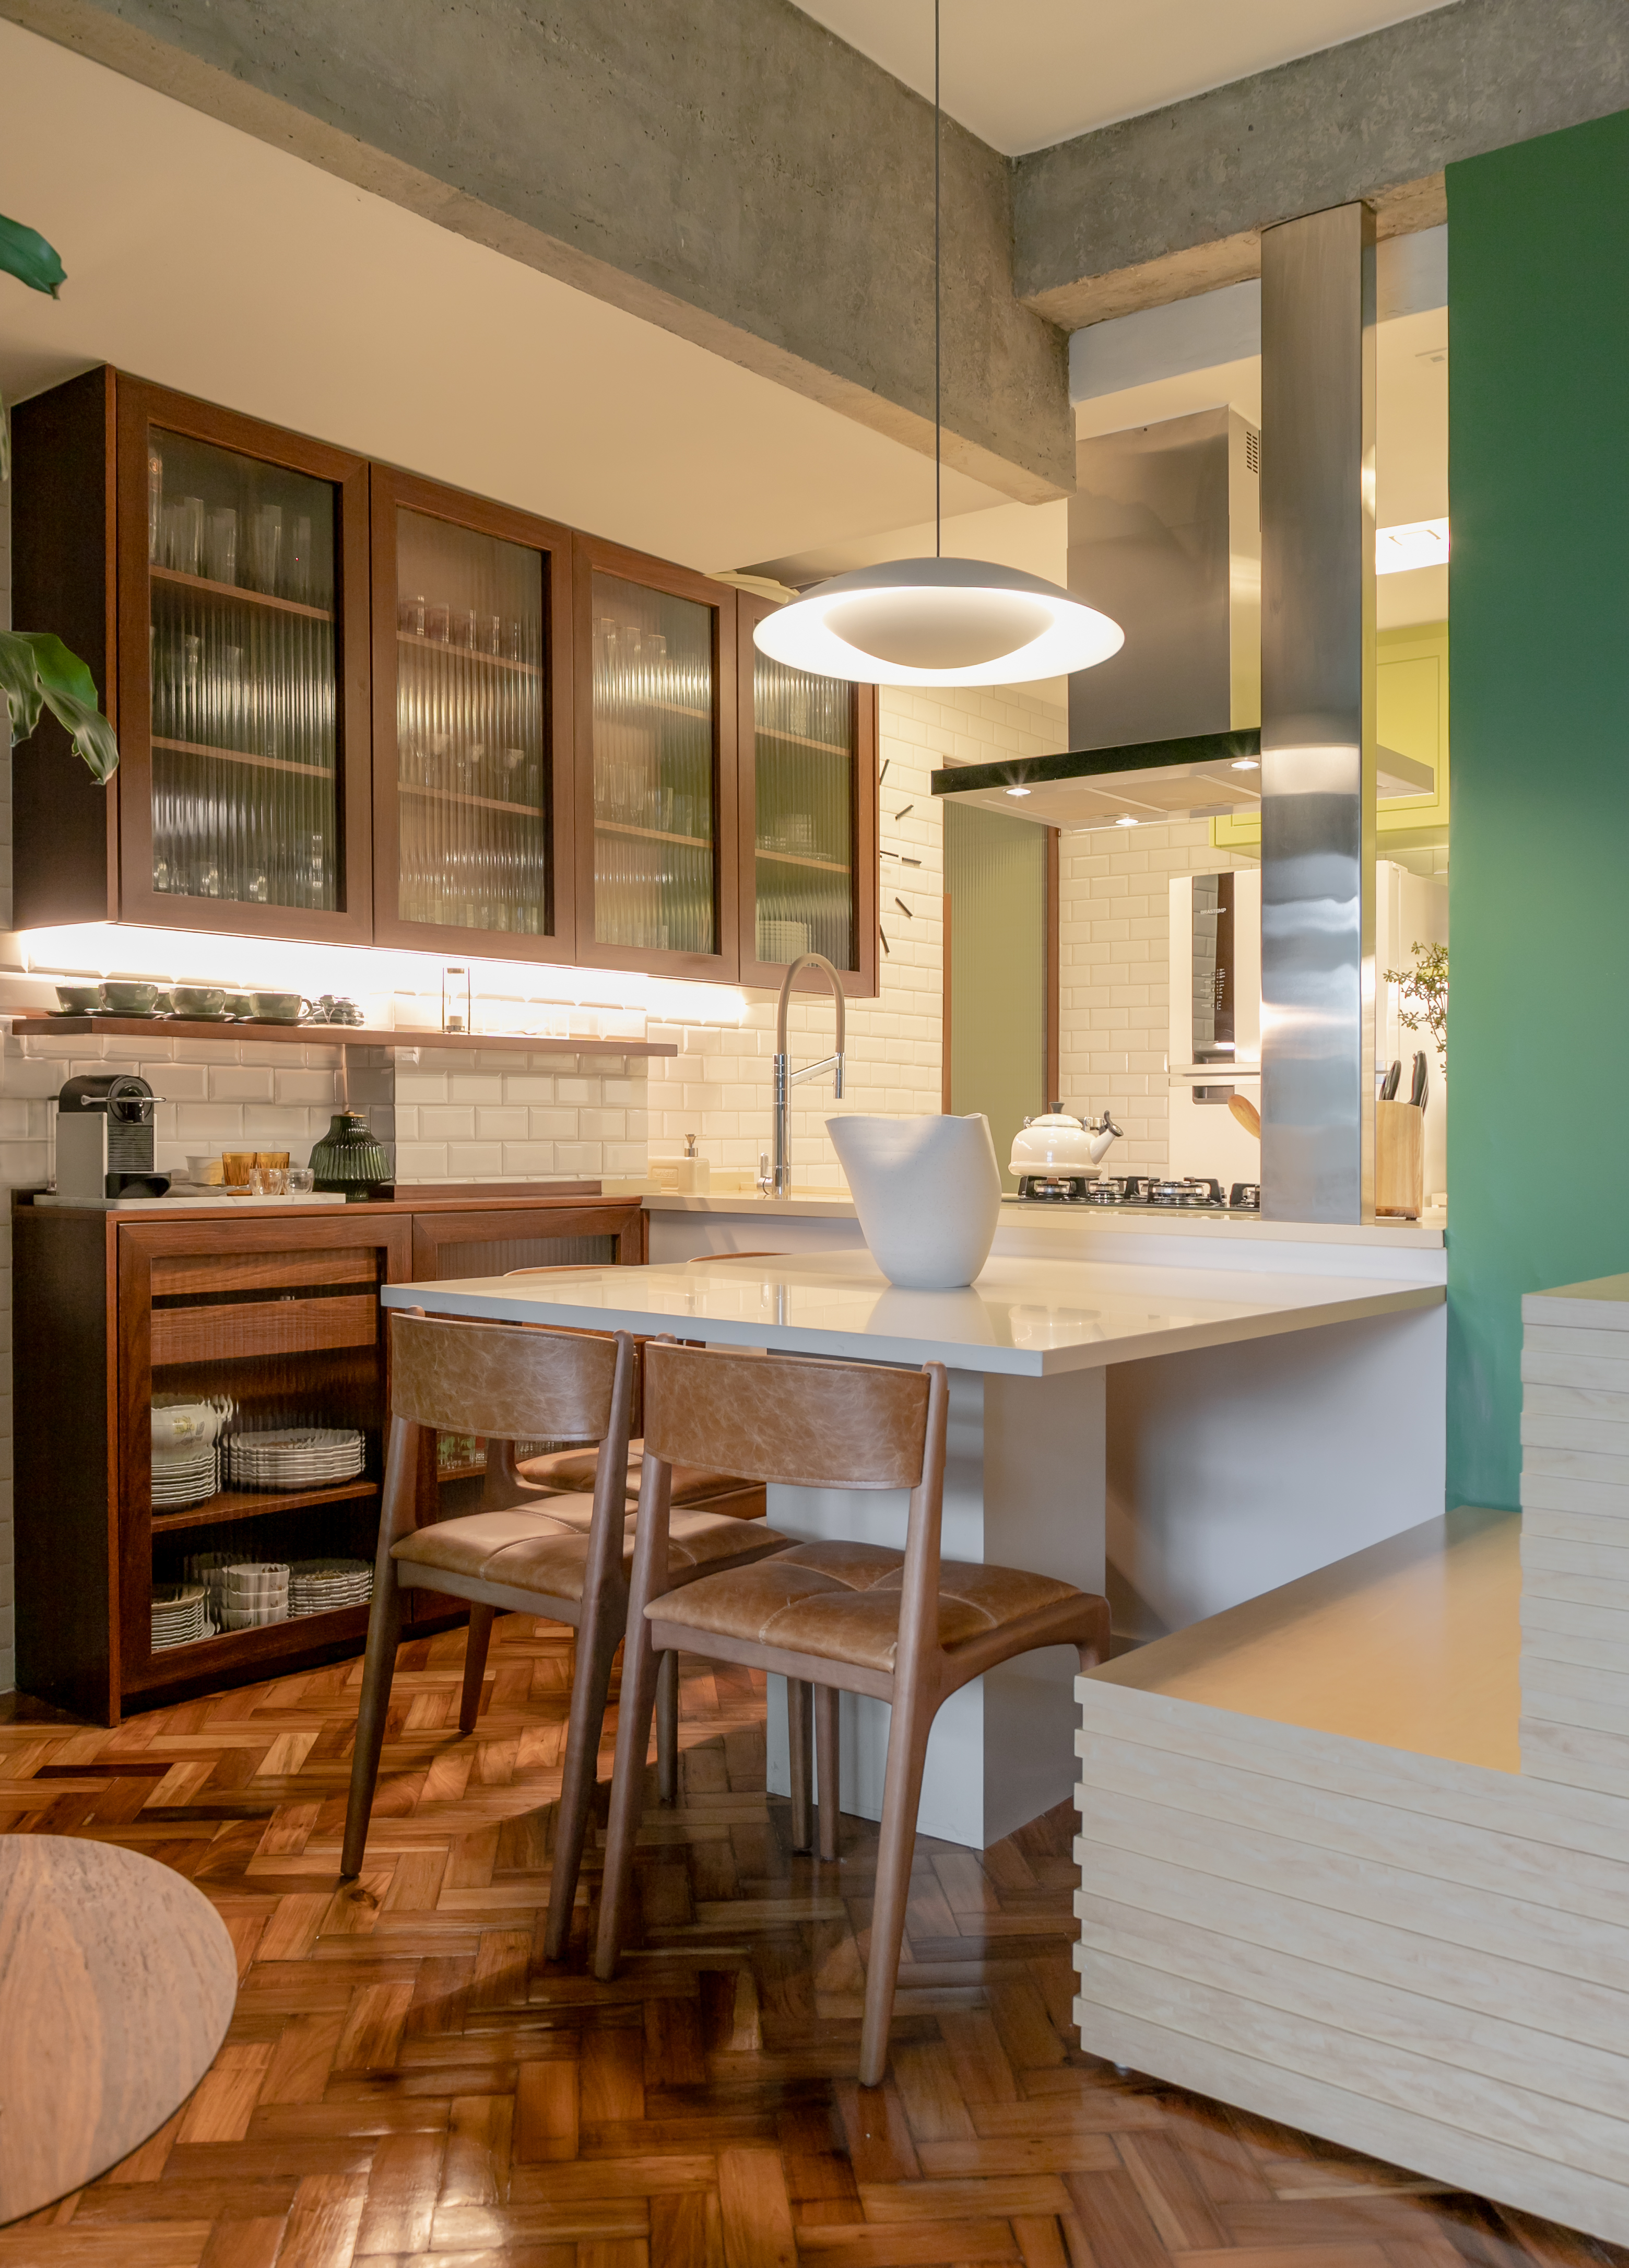 Projeto de Marcela Martins. Na foto, cozinha com cristaleira de vidro canelado, marcenaria verde, ilha e piso de taco.